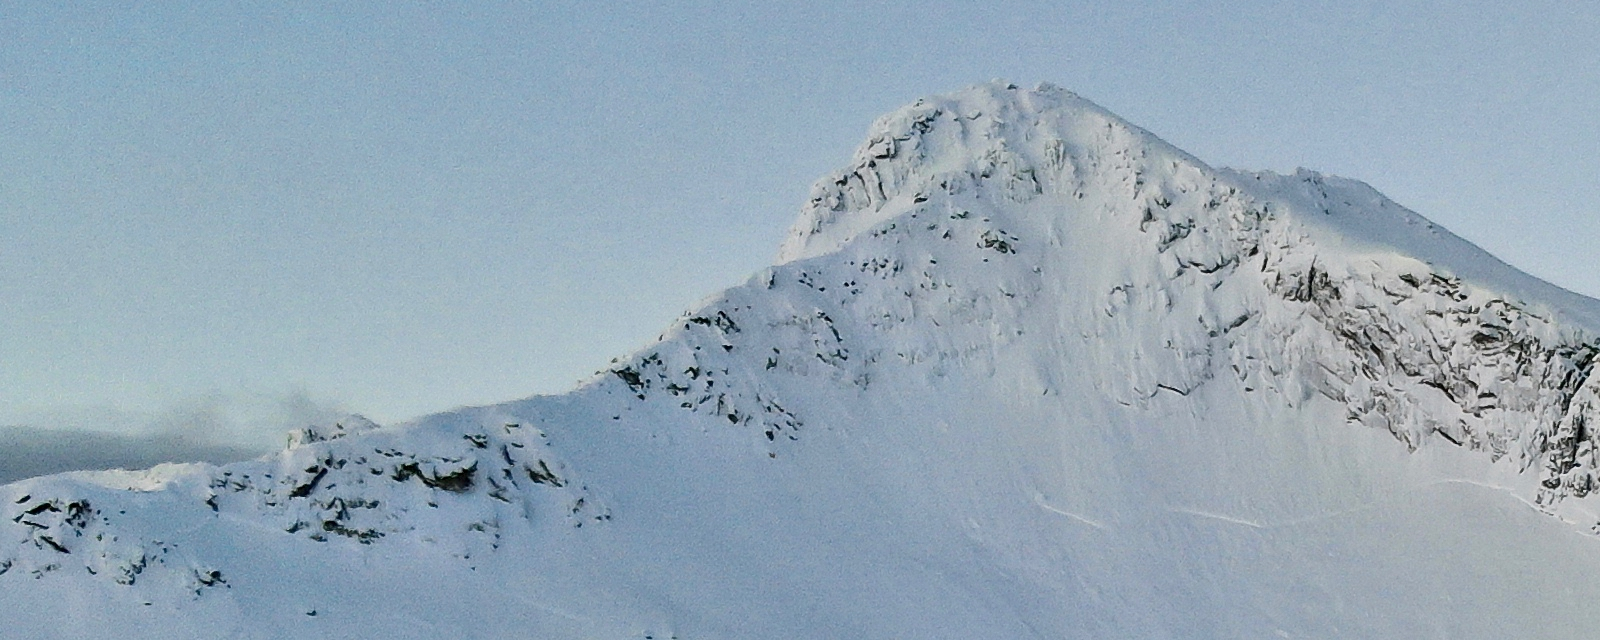 Bilde av fjelltopp med snø på